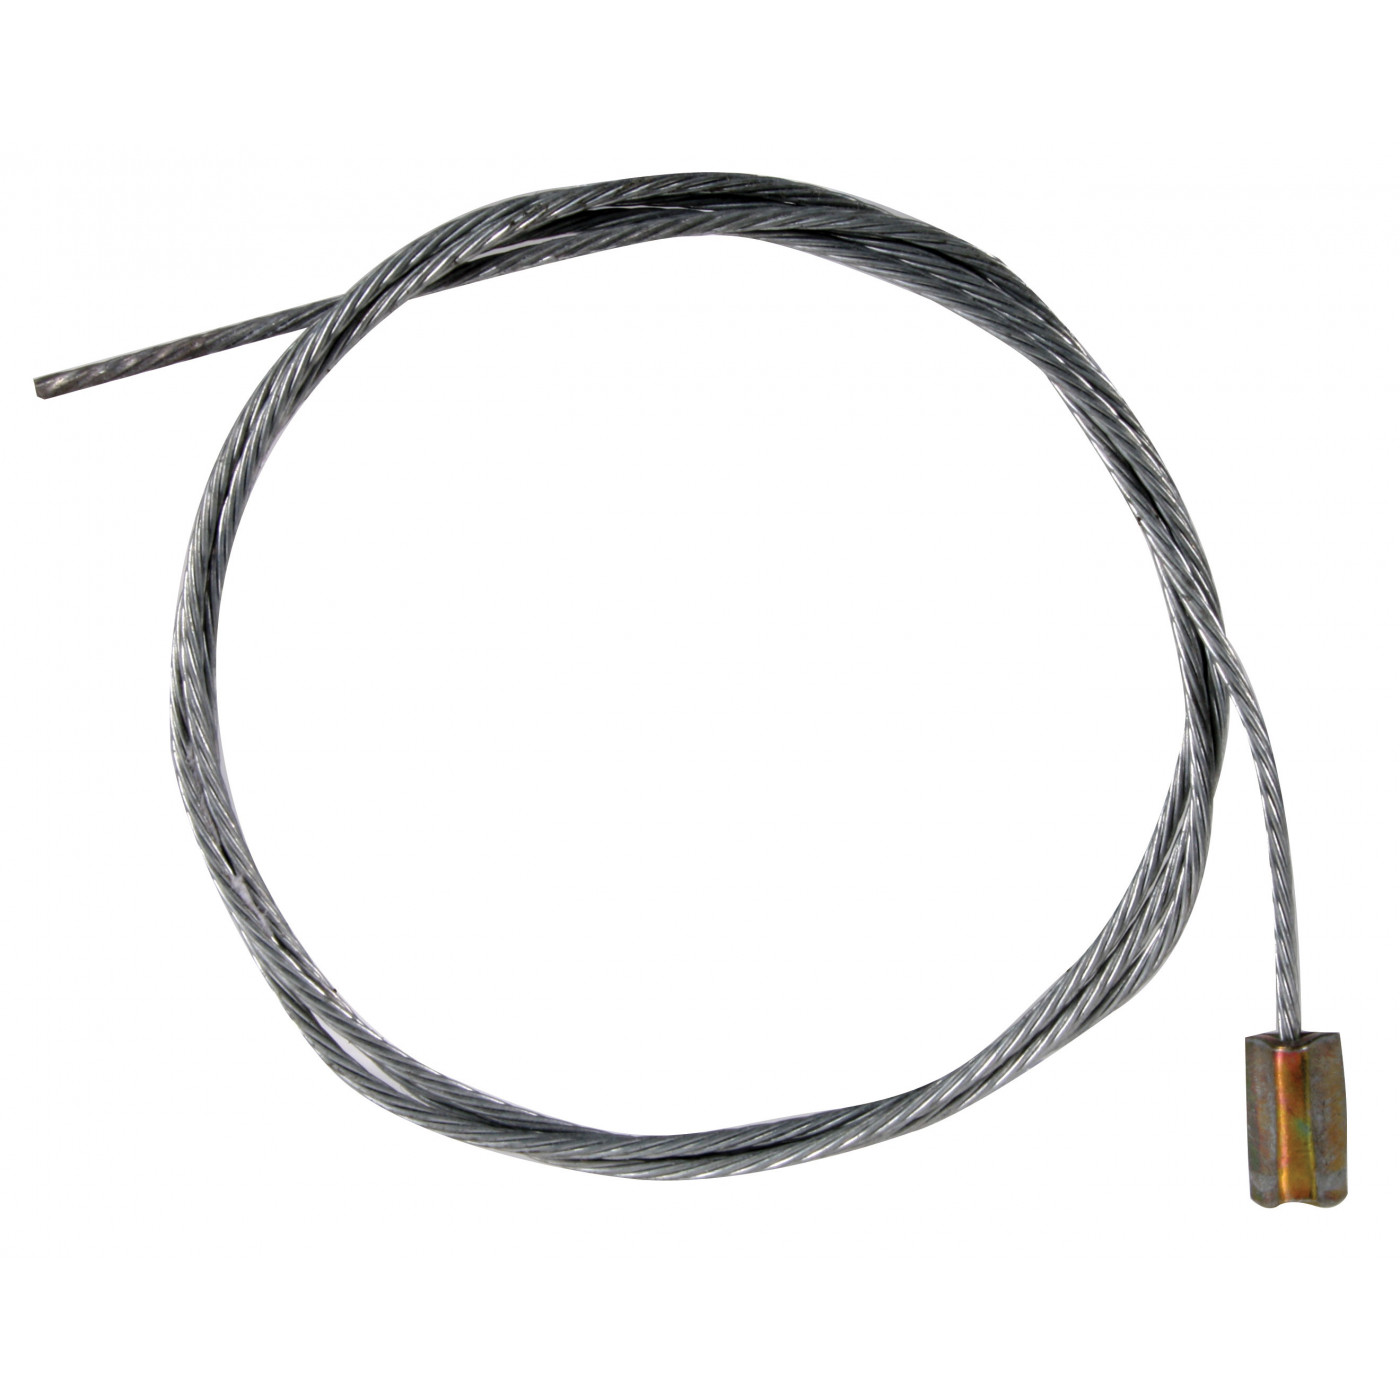 Kabel für Thermostat für CT Motoren oder 1700-2000cm³